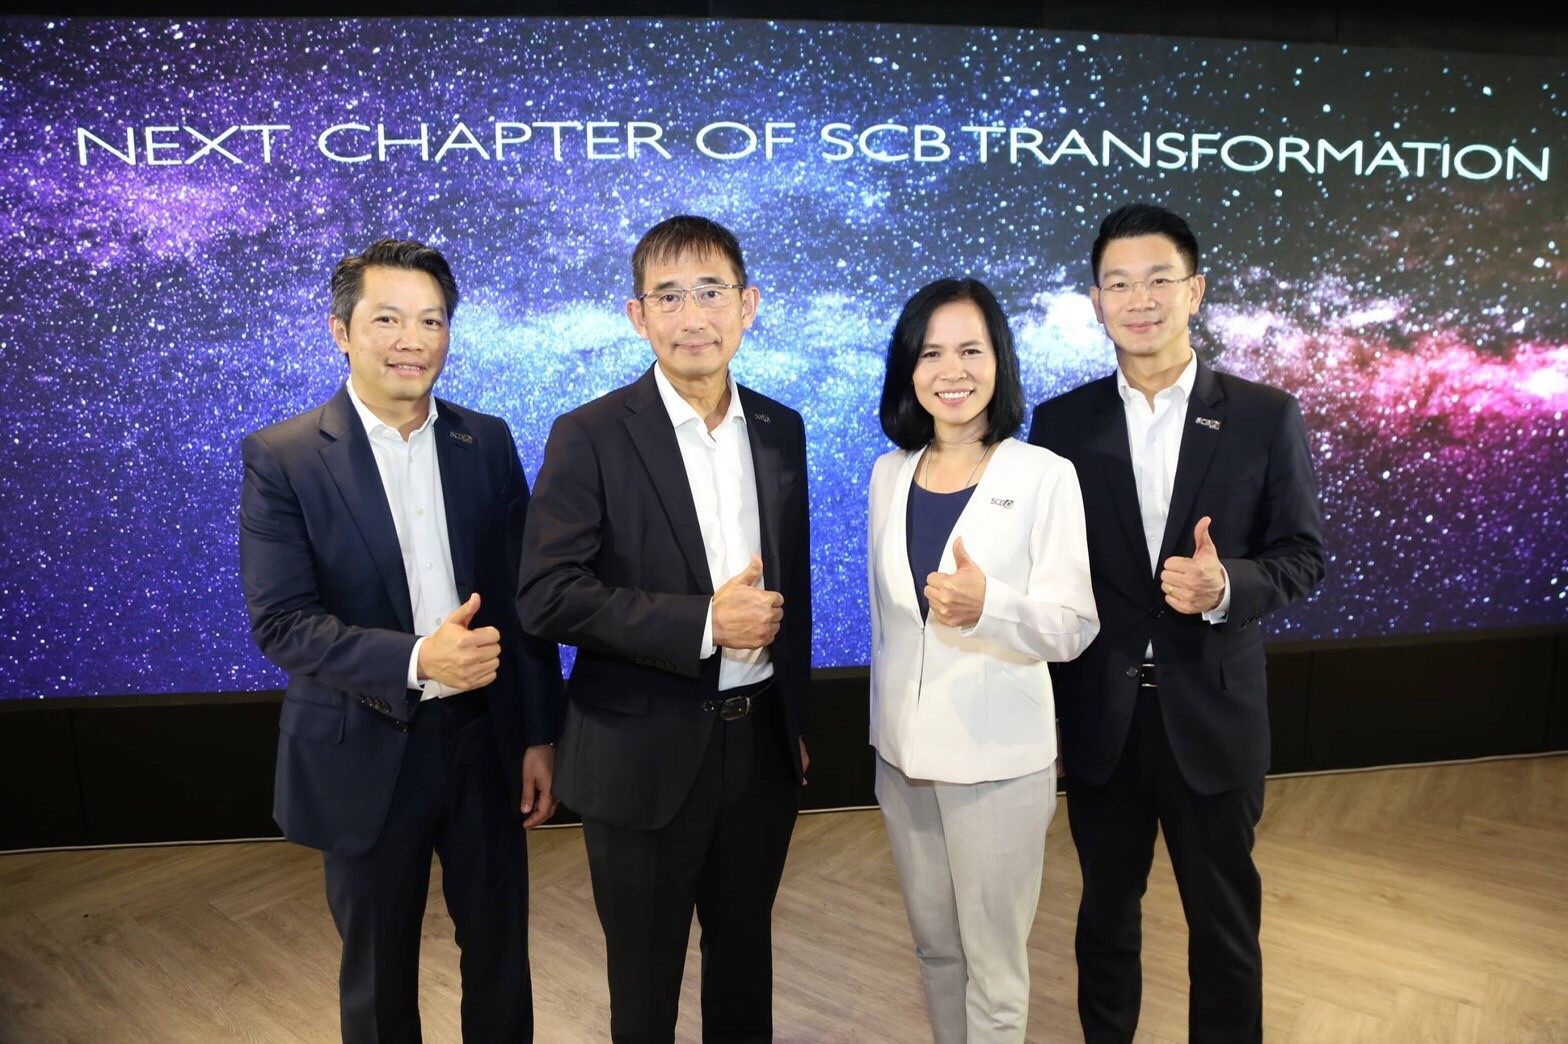 ก้าวใหม่ของ SCB รับปี 2019 กับผู้บริหารทั้ง 4 ผลักดันองค์กรสู่ Agile Organization